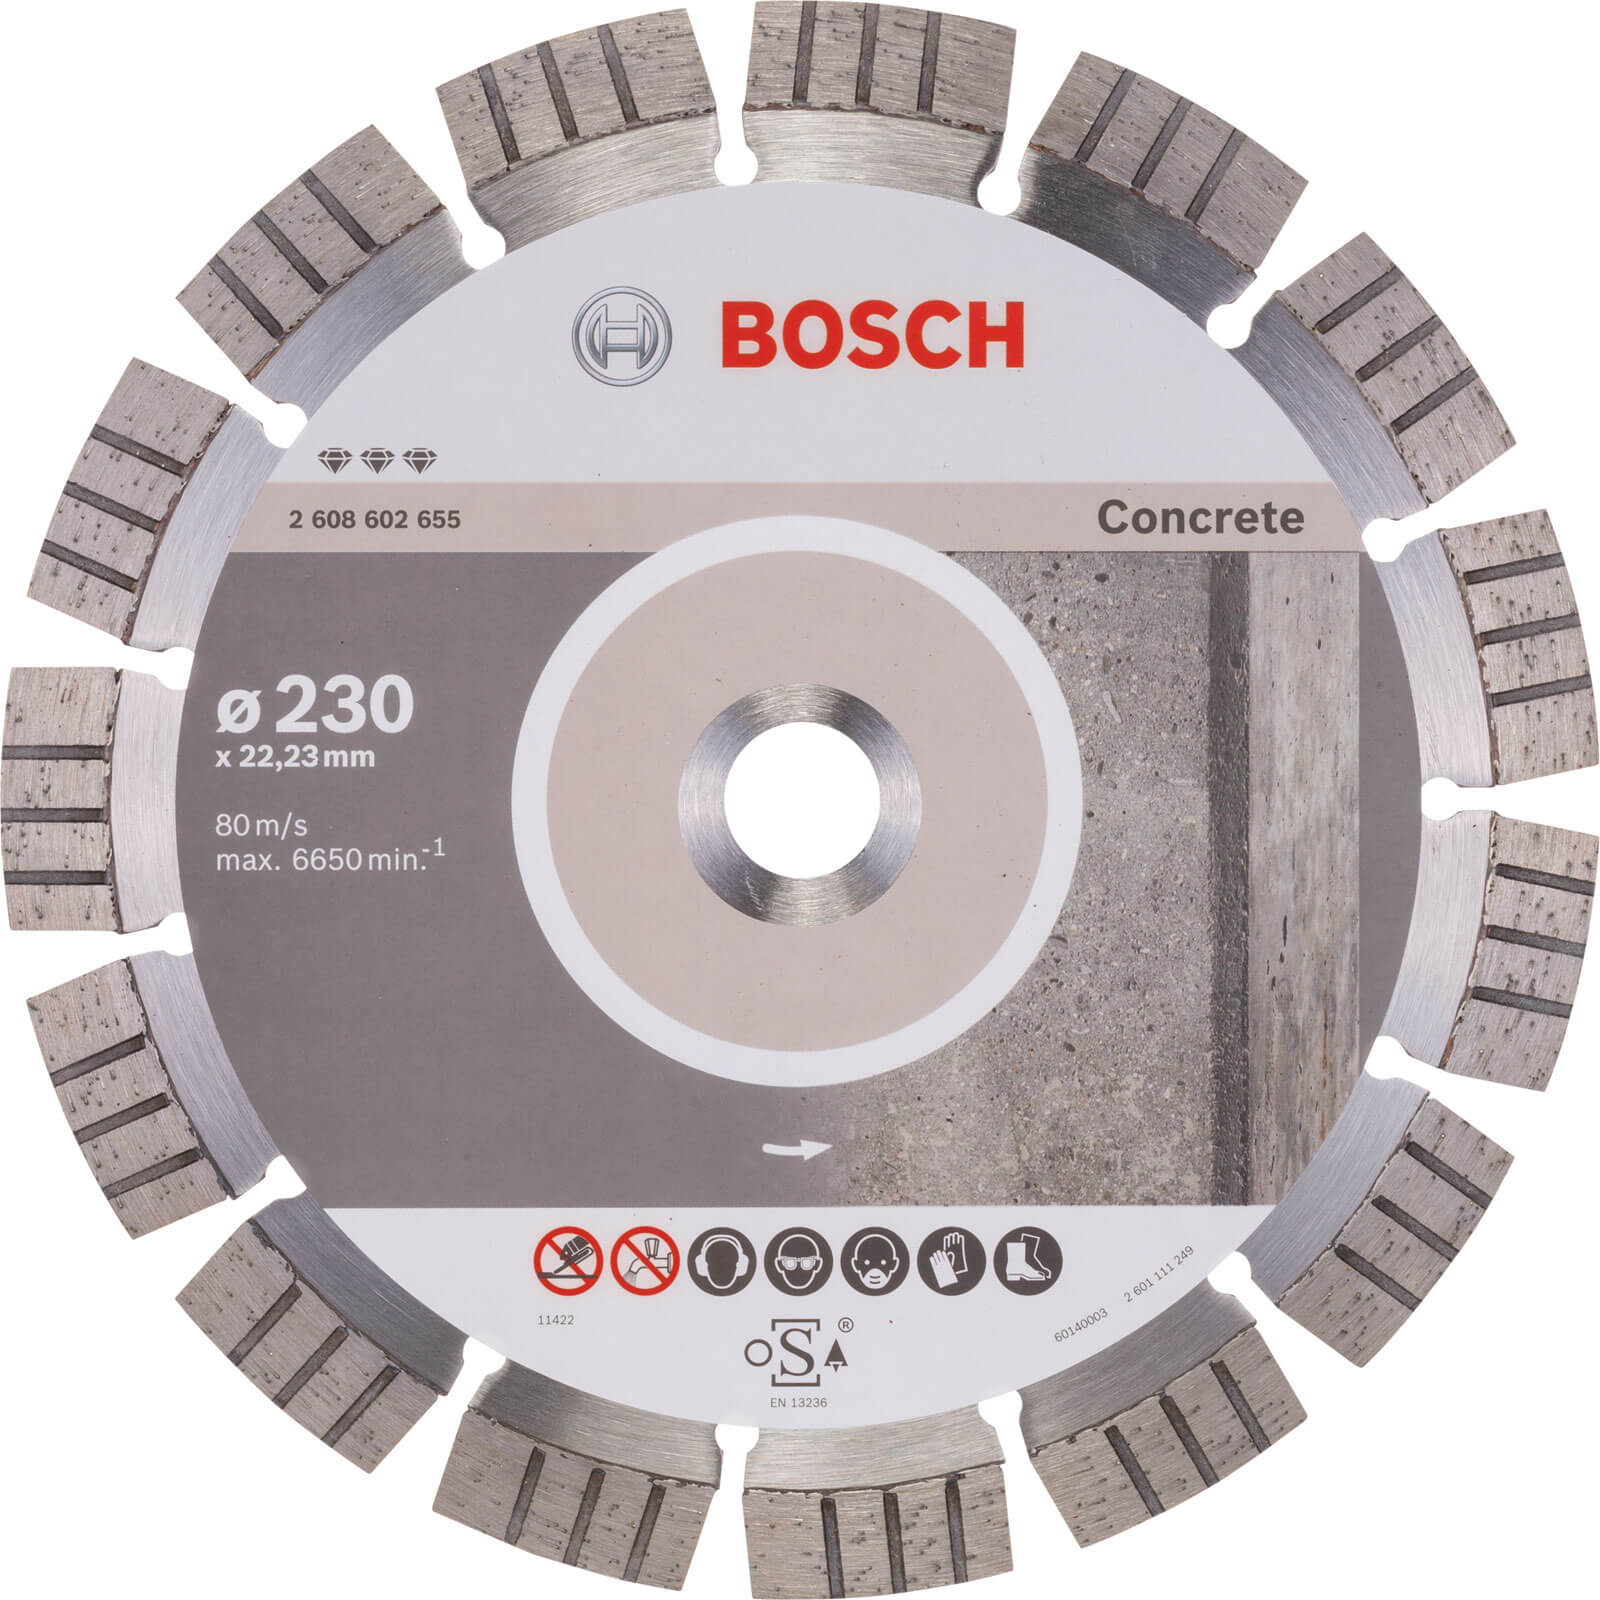 Bosch Best Concrete Diamond Cutting Disc | Cutting Discs